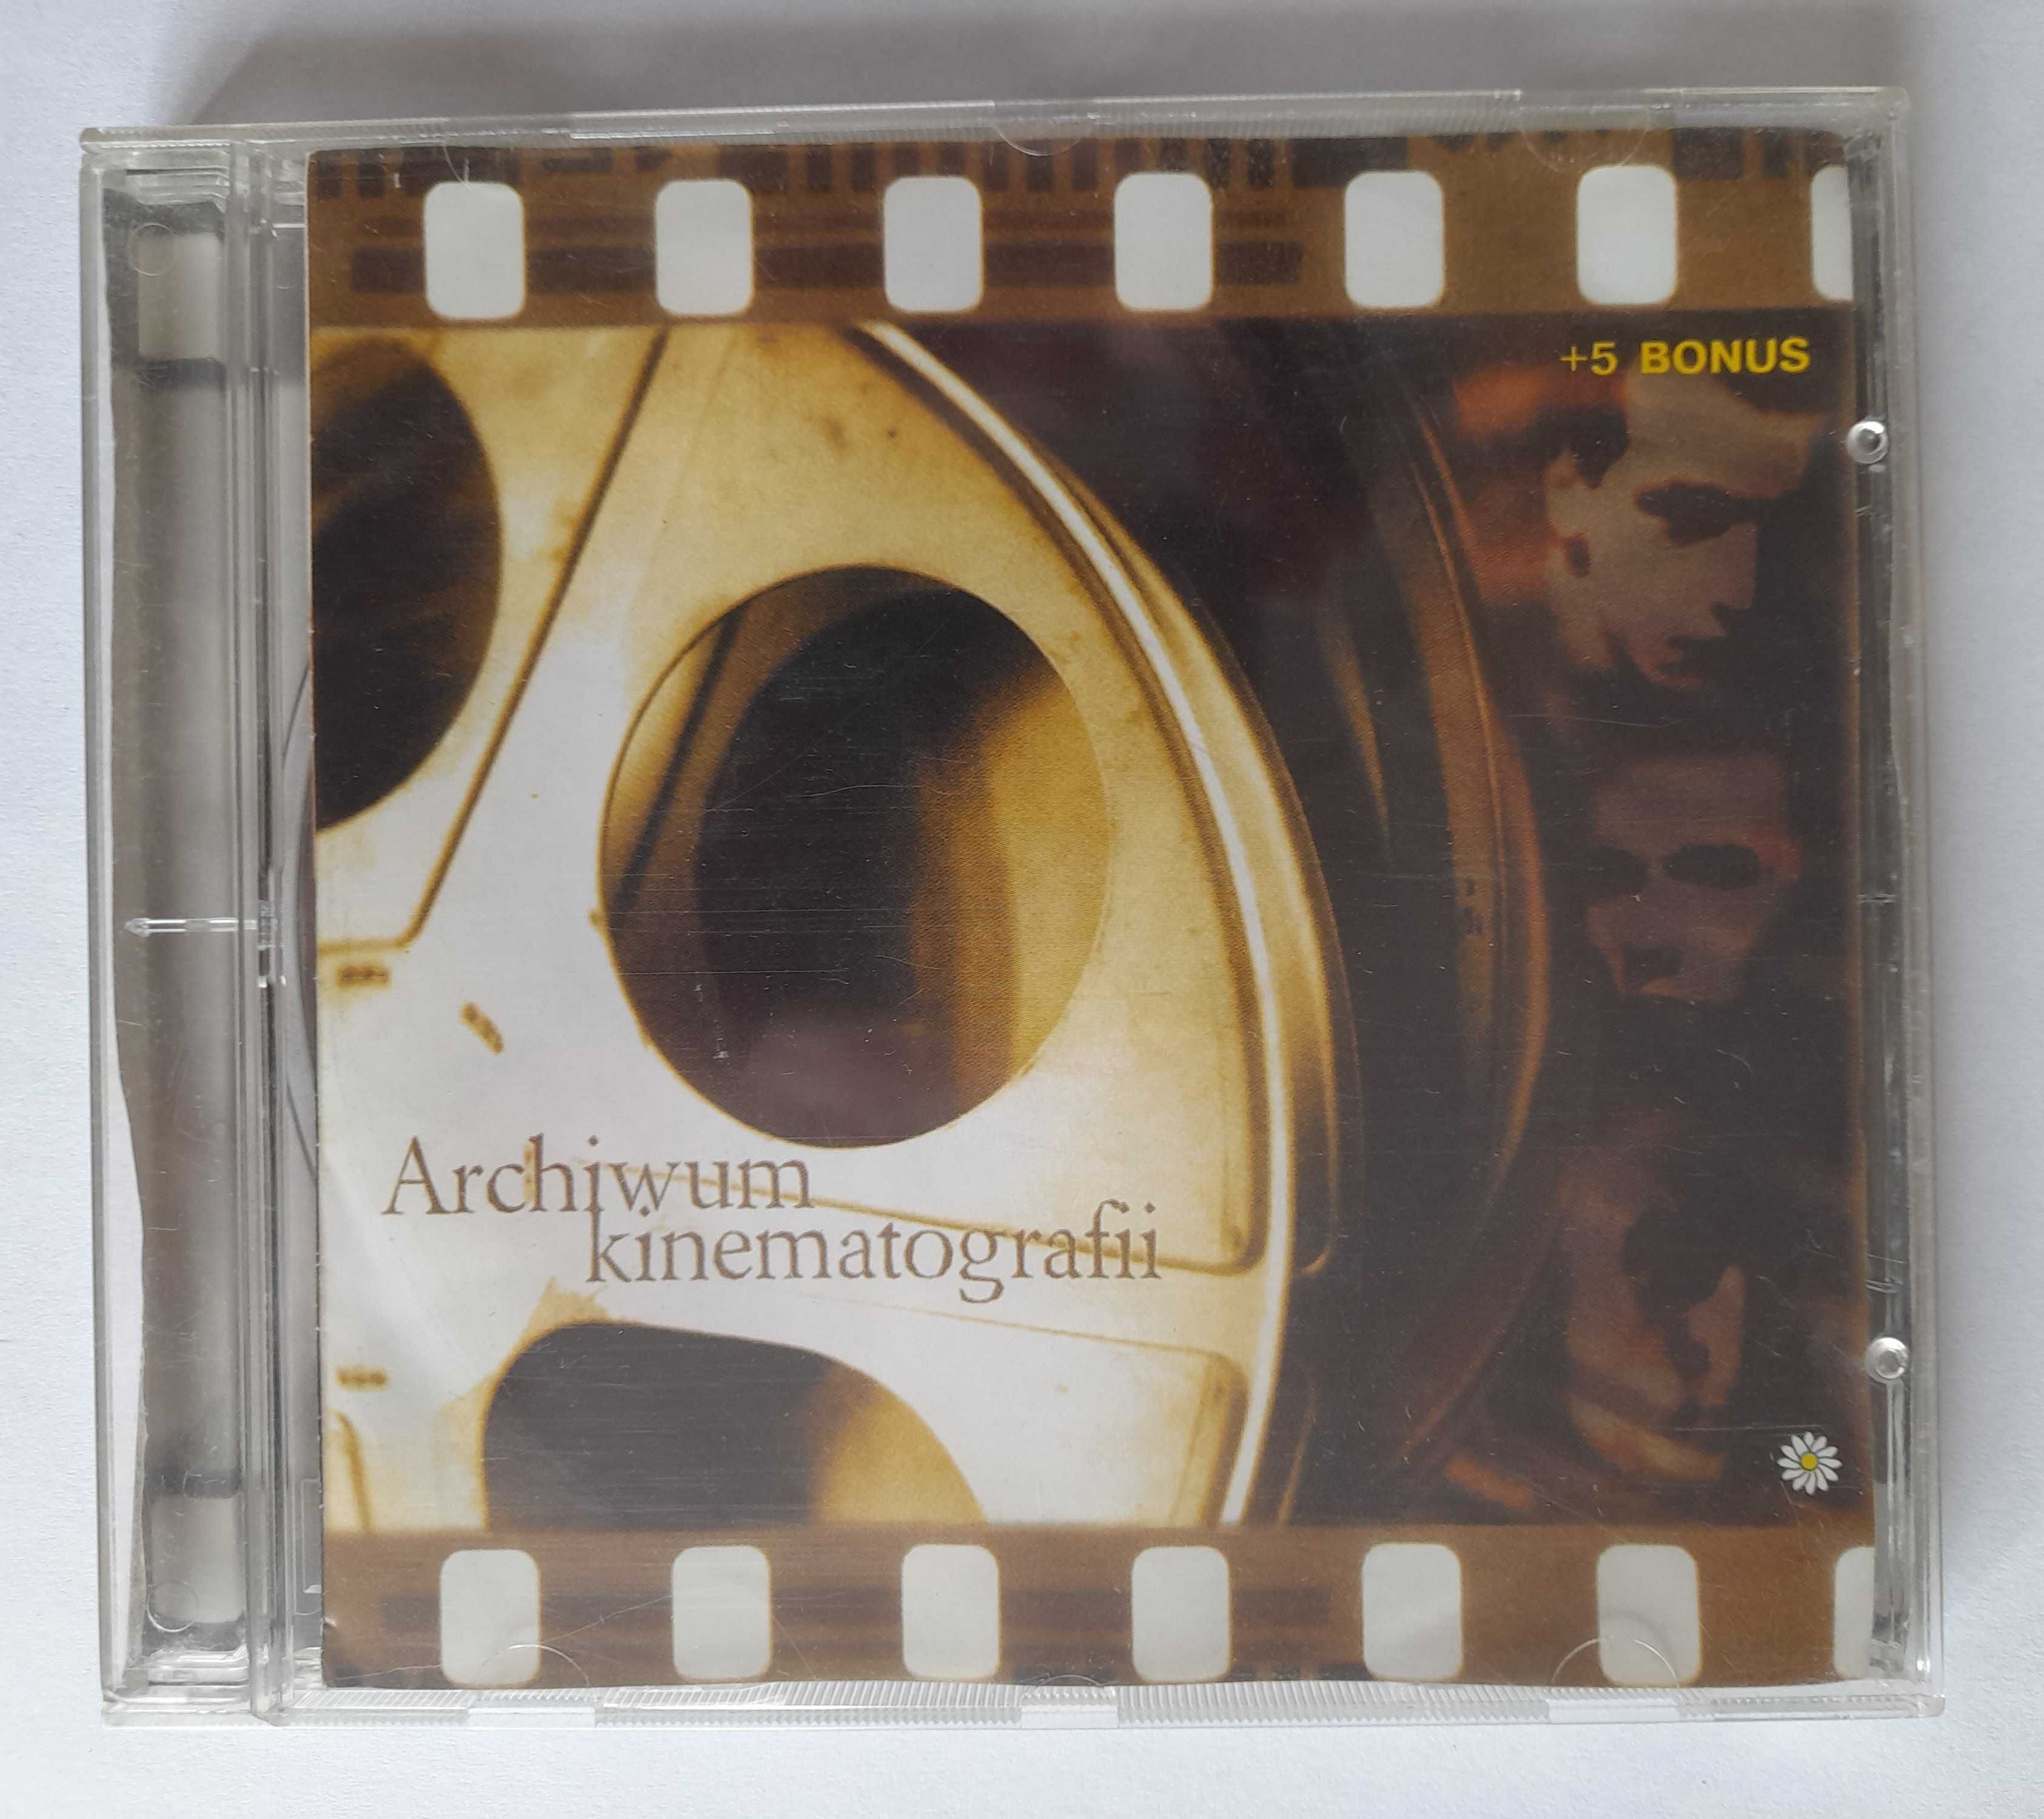 Archiwum kinematografii PAKTOFONIKA CD